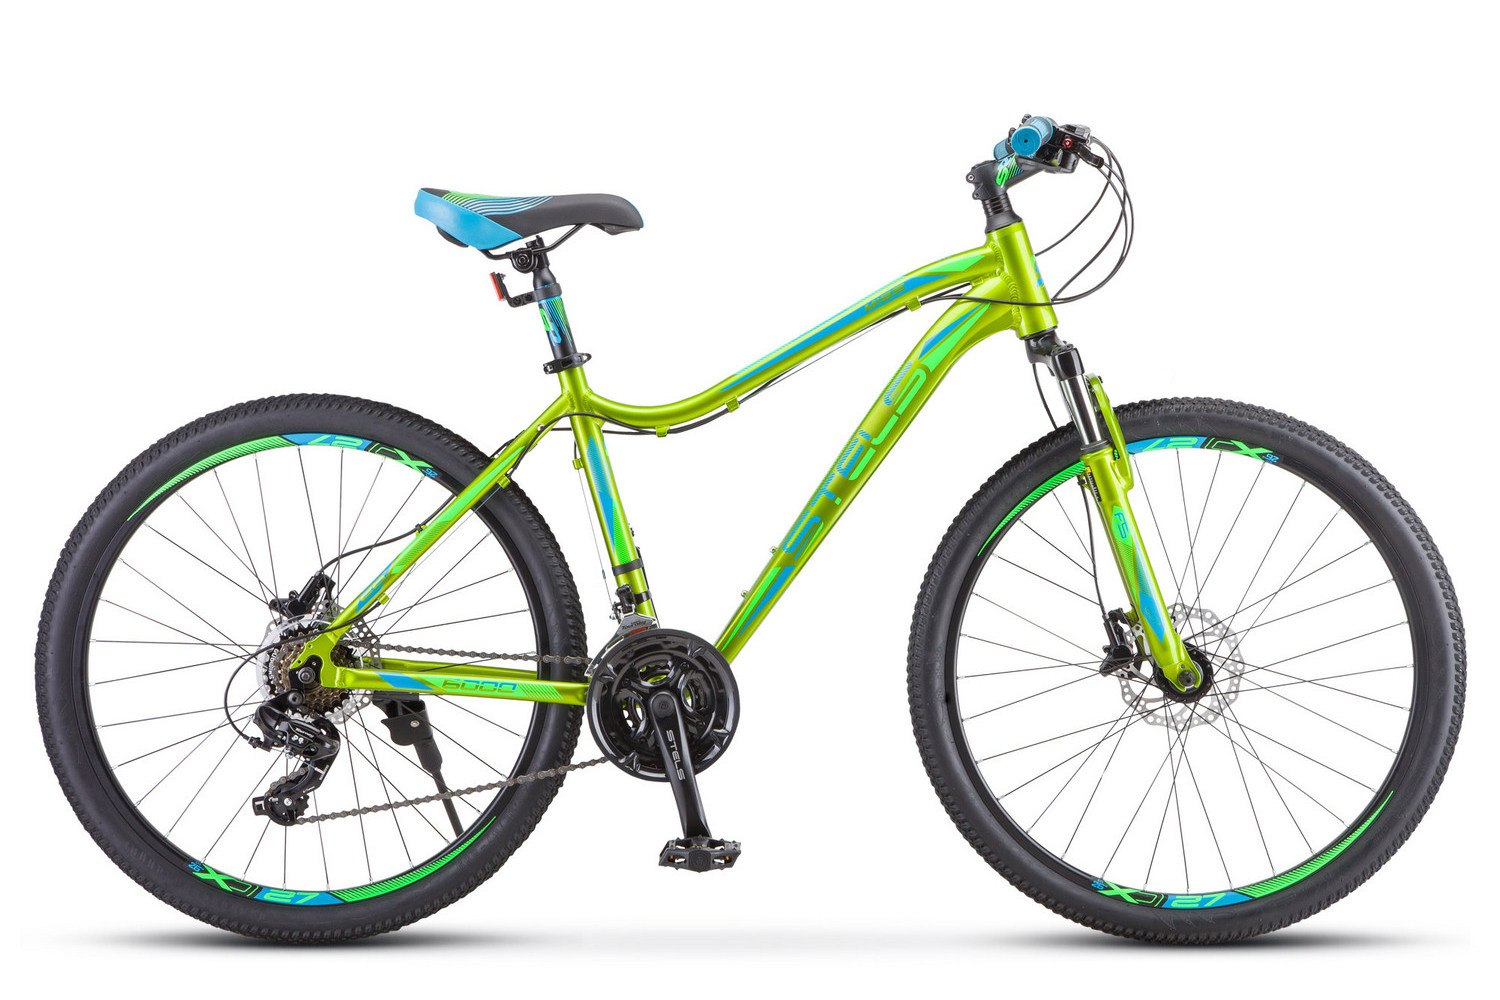 Женский велосипед Stels Miss 6000 D 26 V010, год 2023, цвет Желтый-Зеленый, ростовка 17